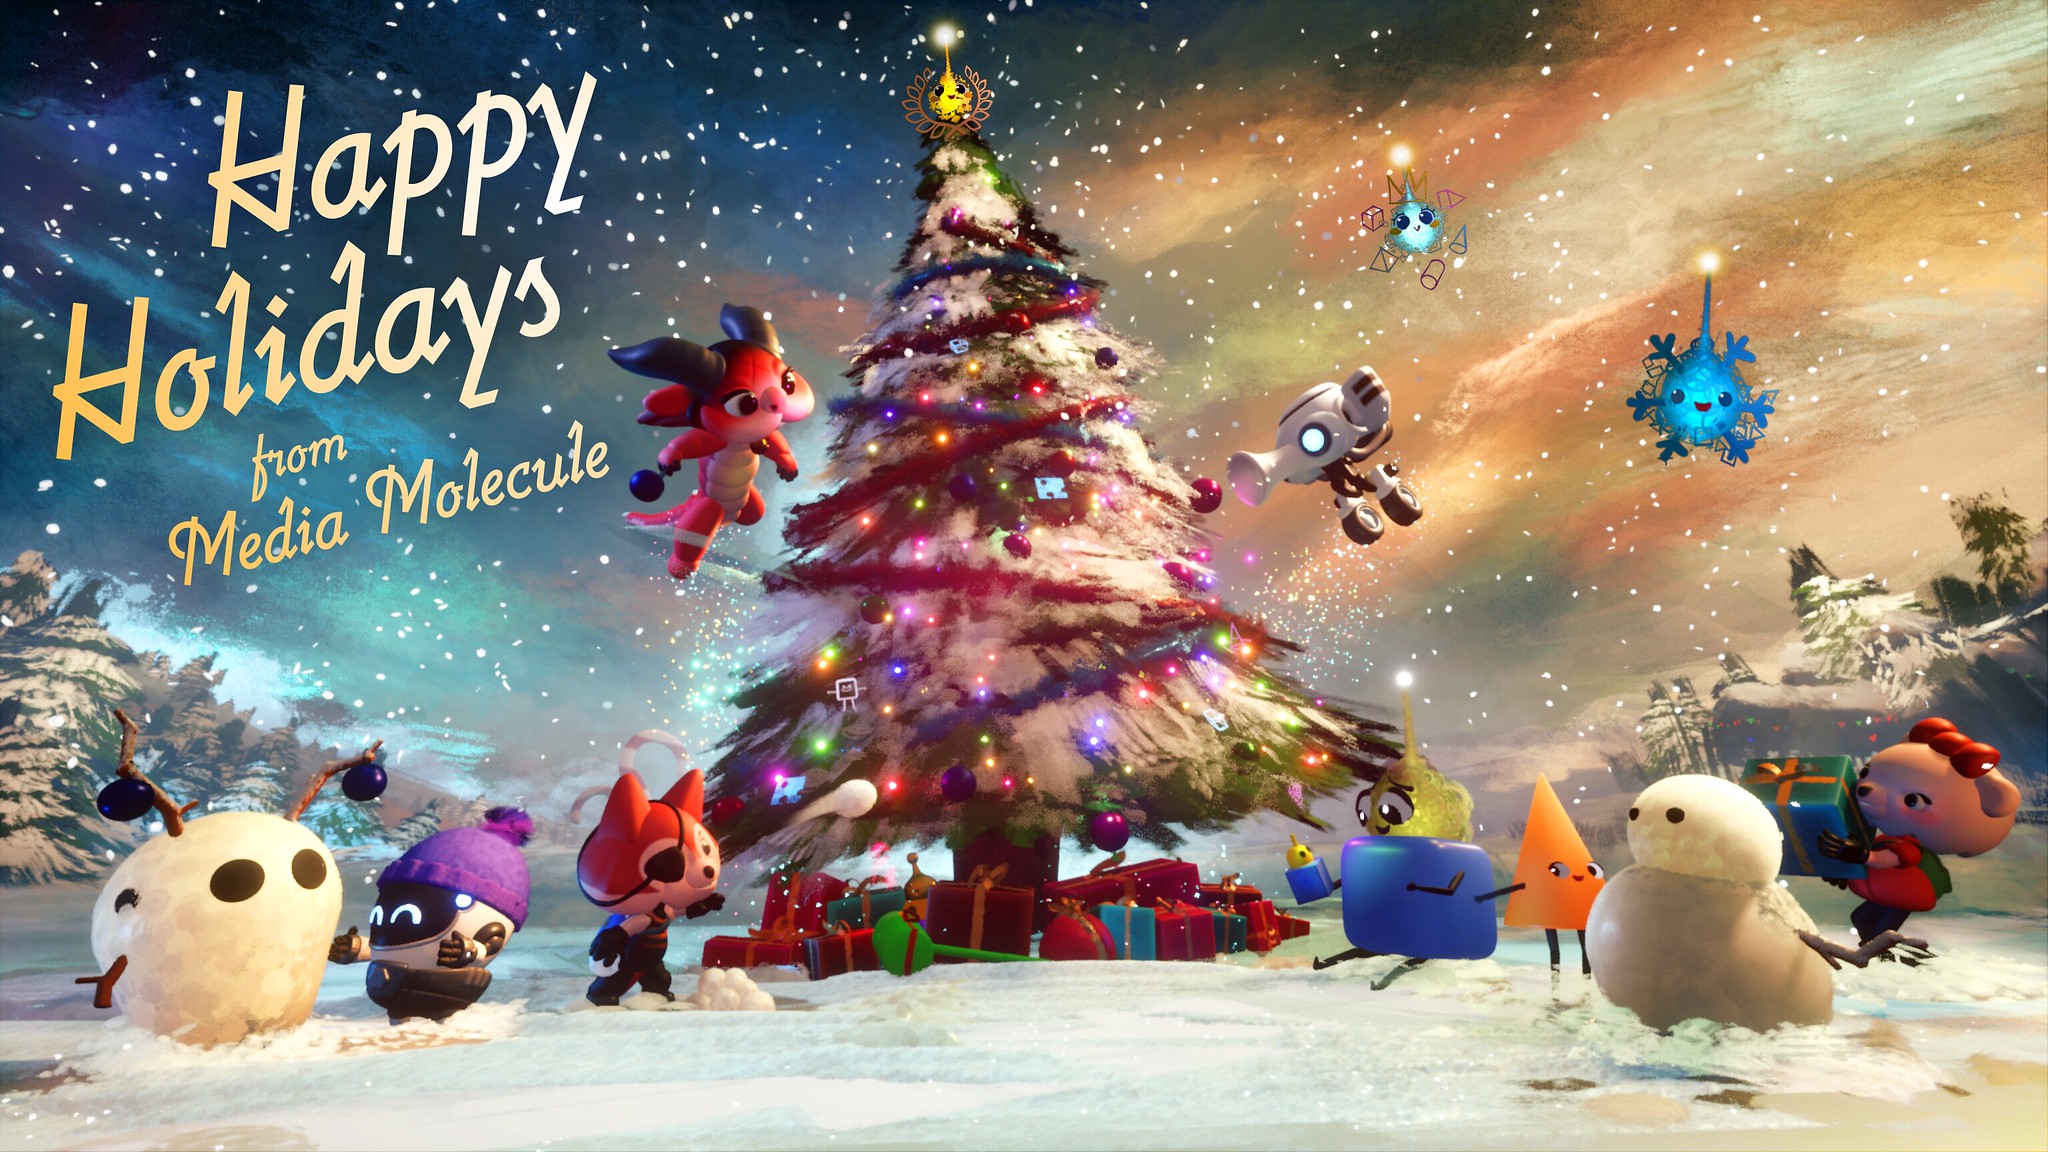 Veselé svátky v krásně barevném přání od Media Molecule, autorů jednoho z PS5 launch titulů Sackboy.